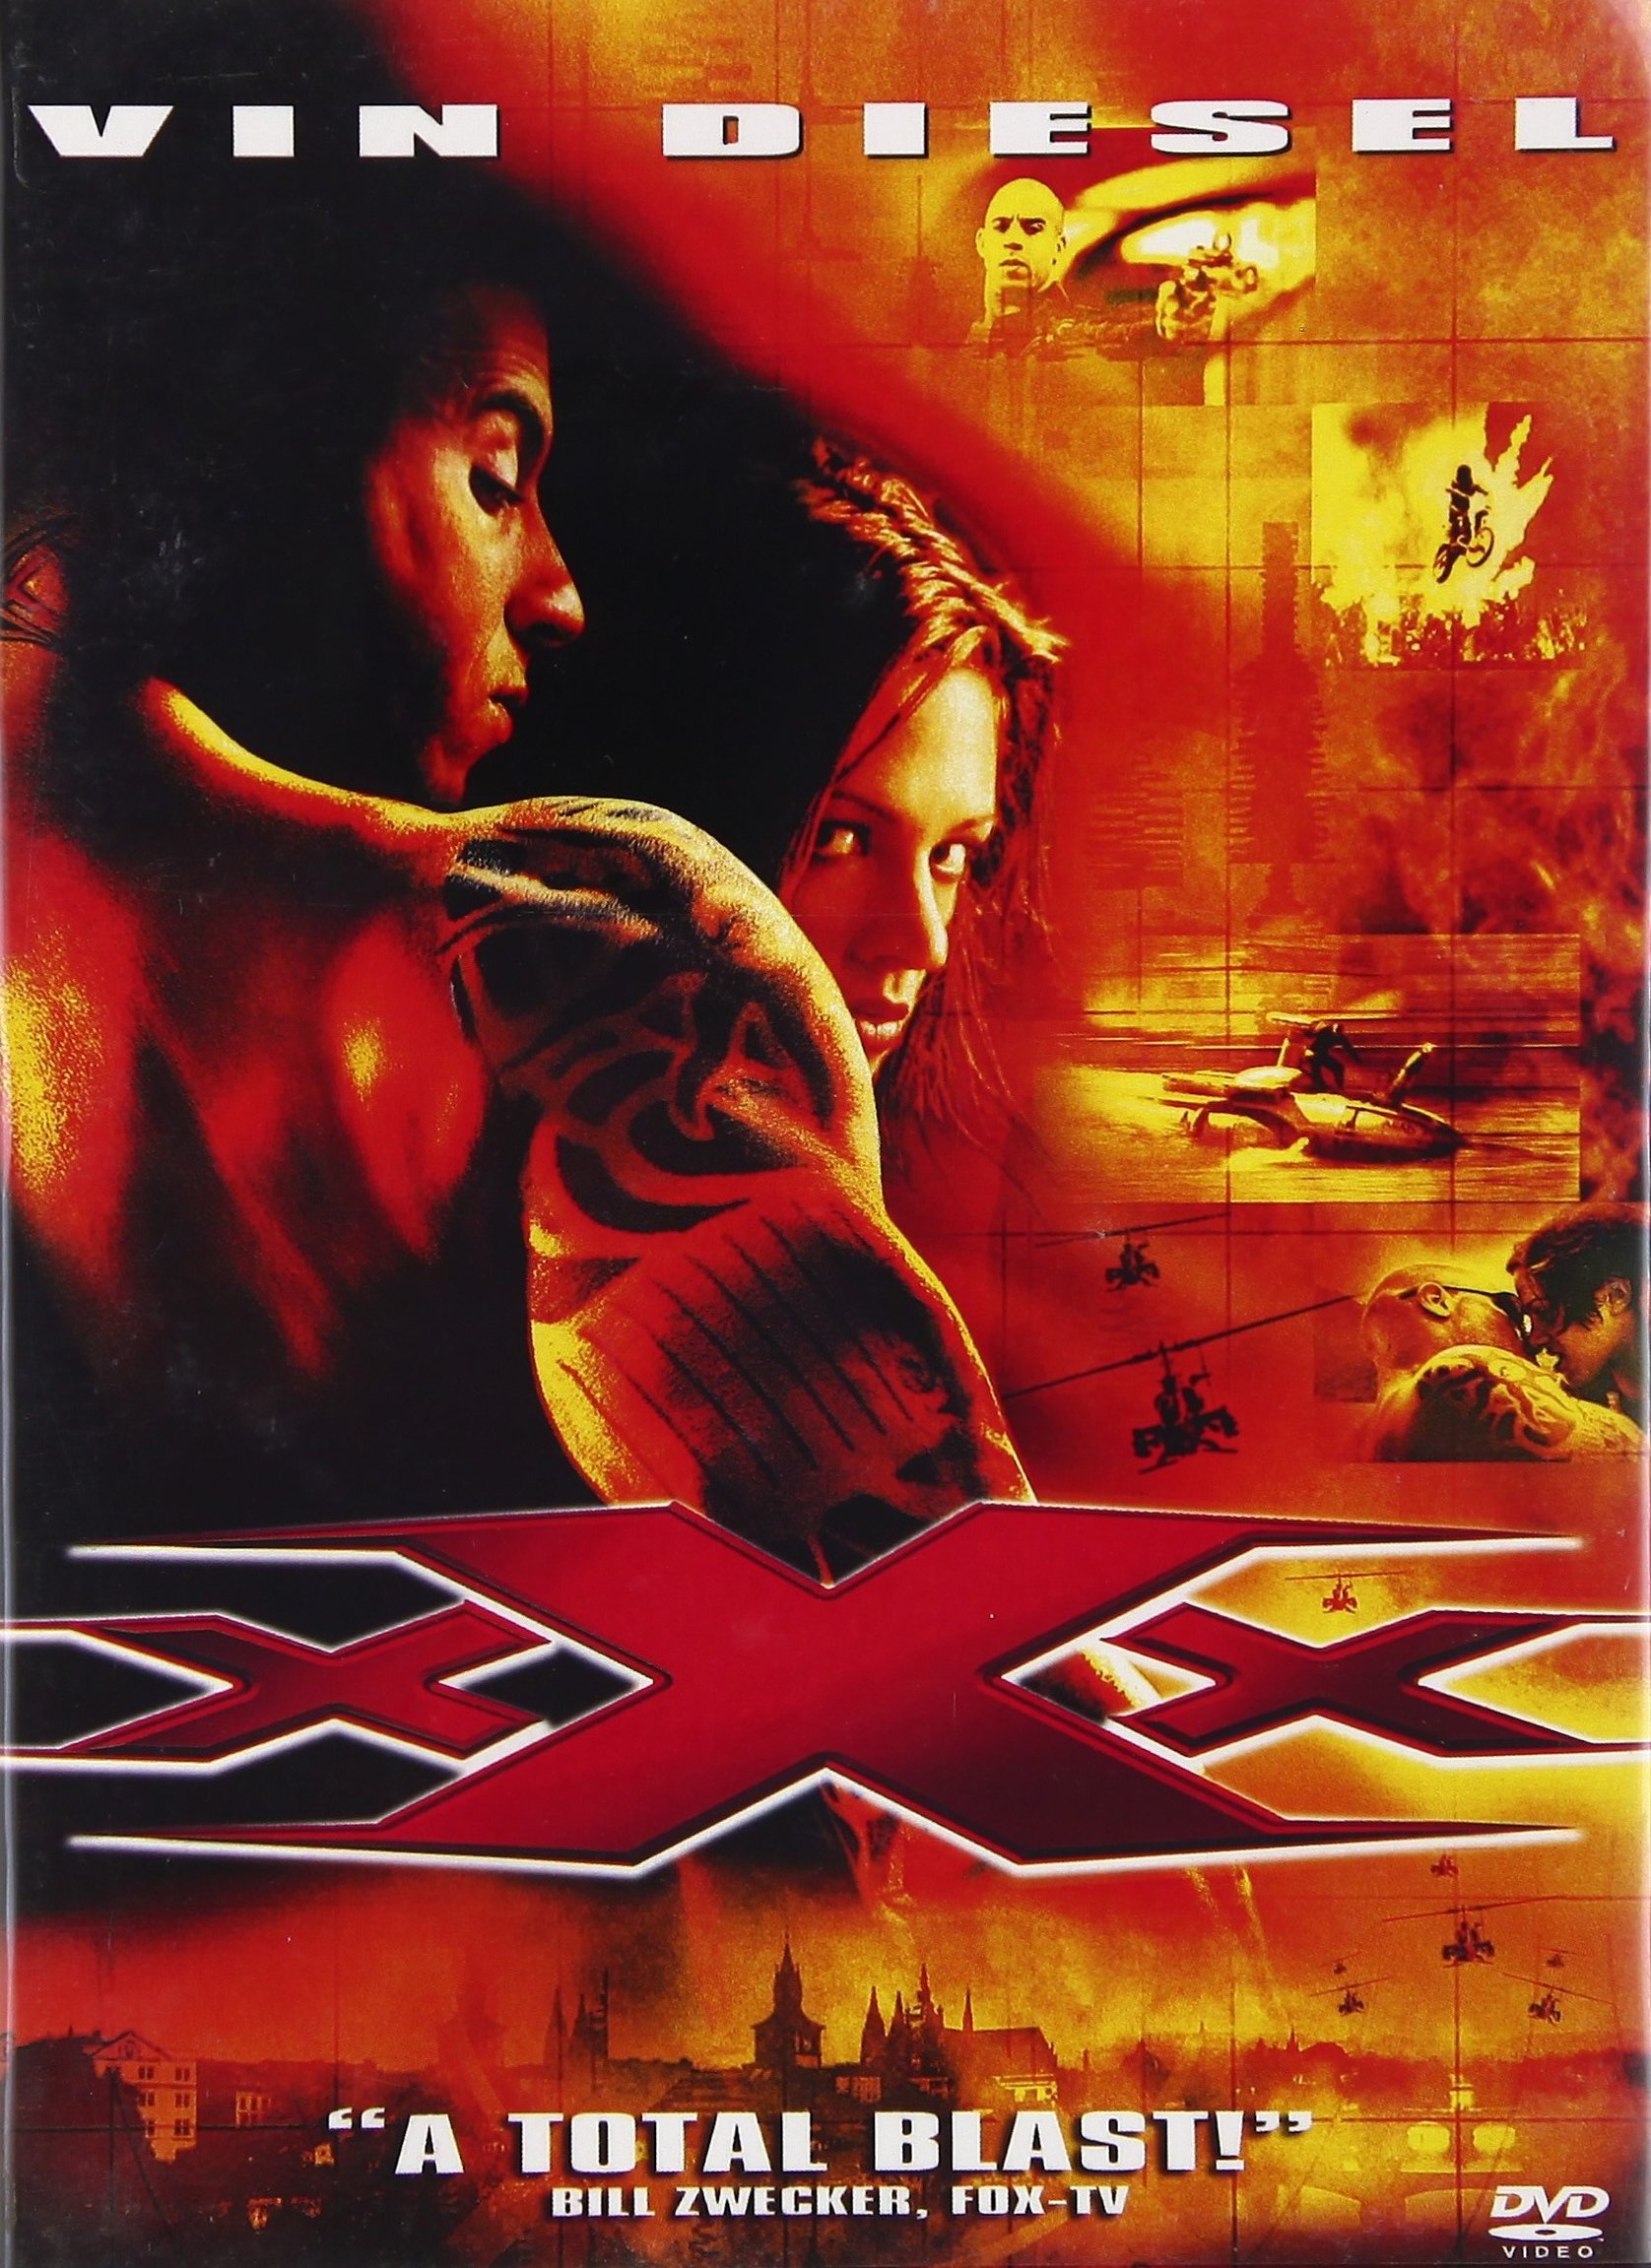 xxx-movie-purchase-or-watch-online